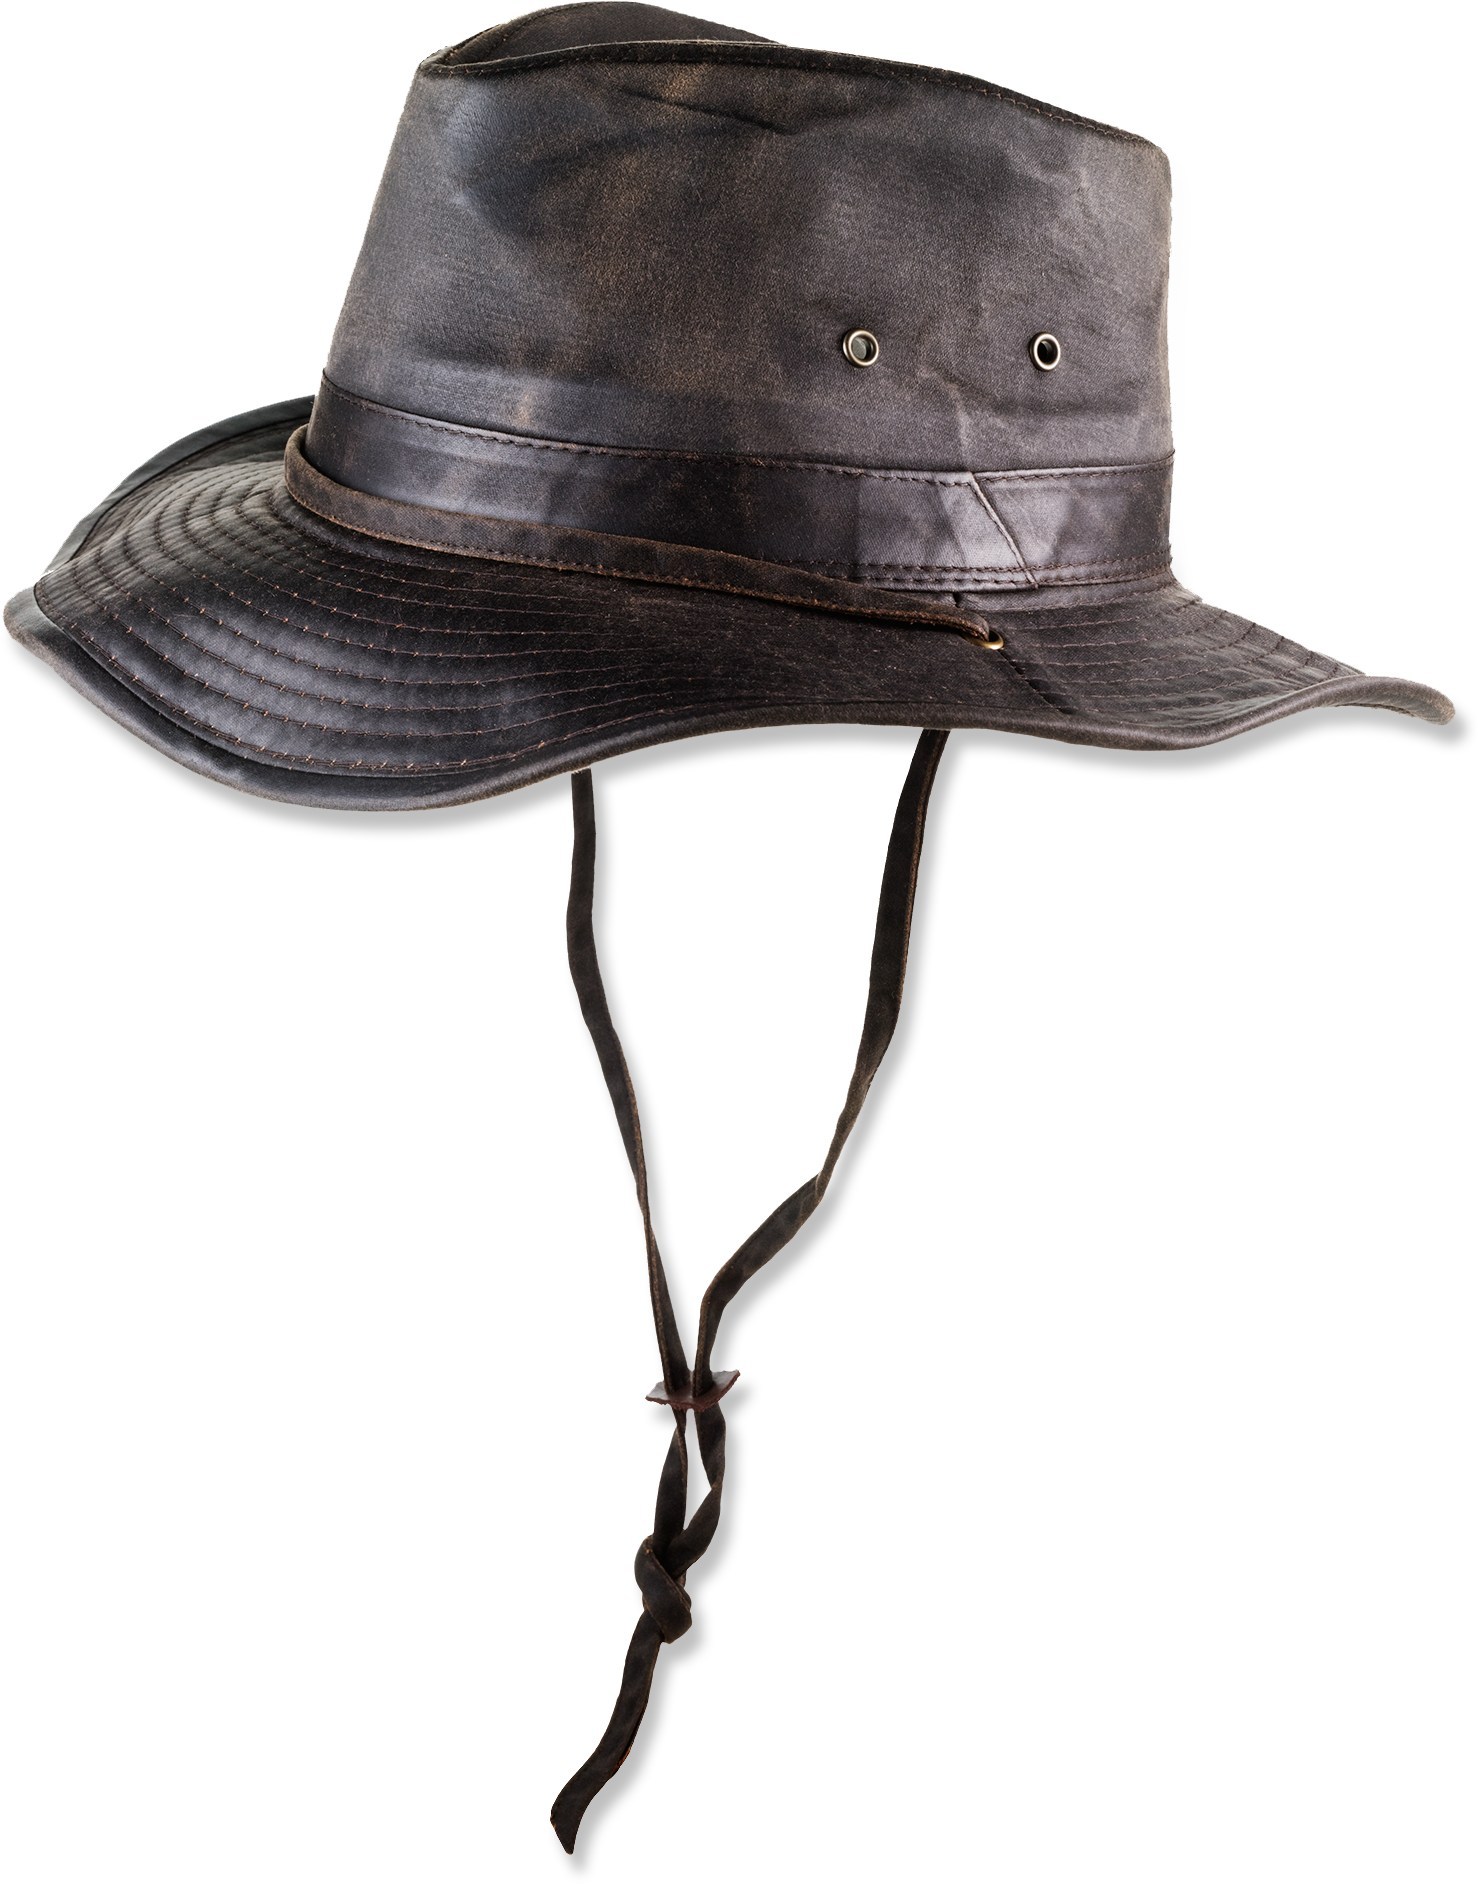 Потертая шляпа Outback Dorfman Hat Co., коричневый